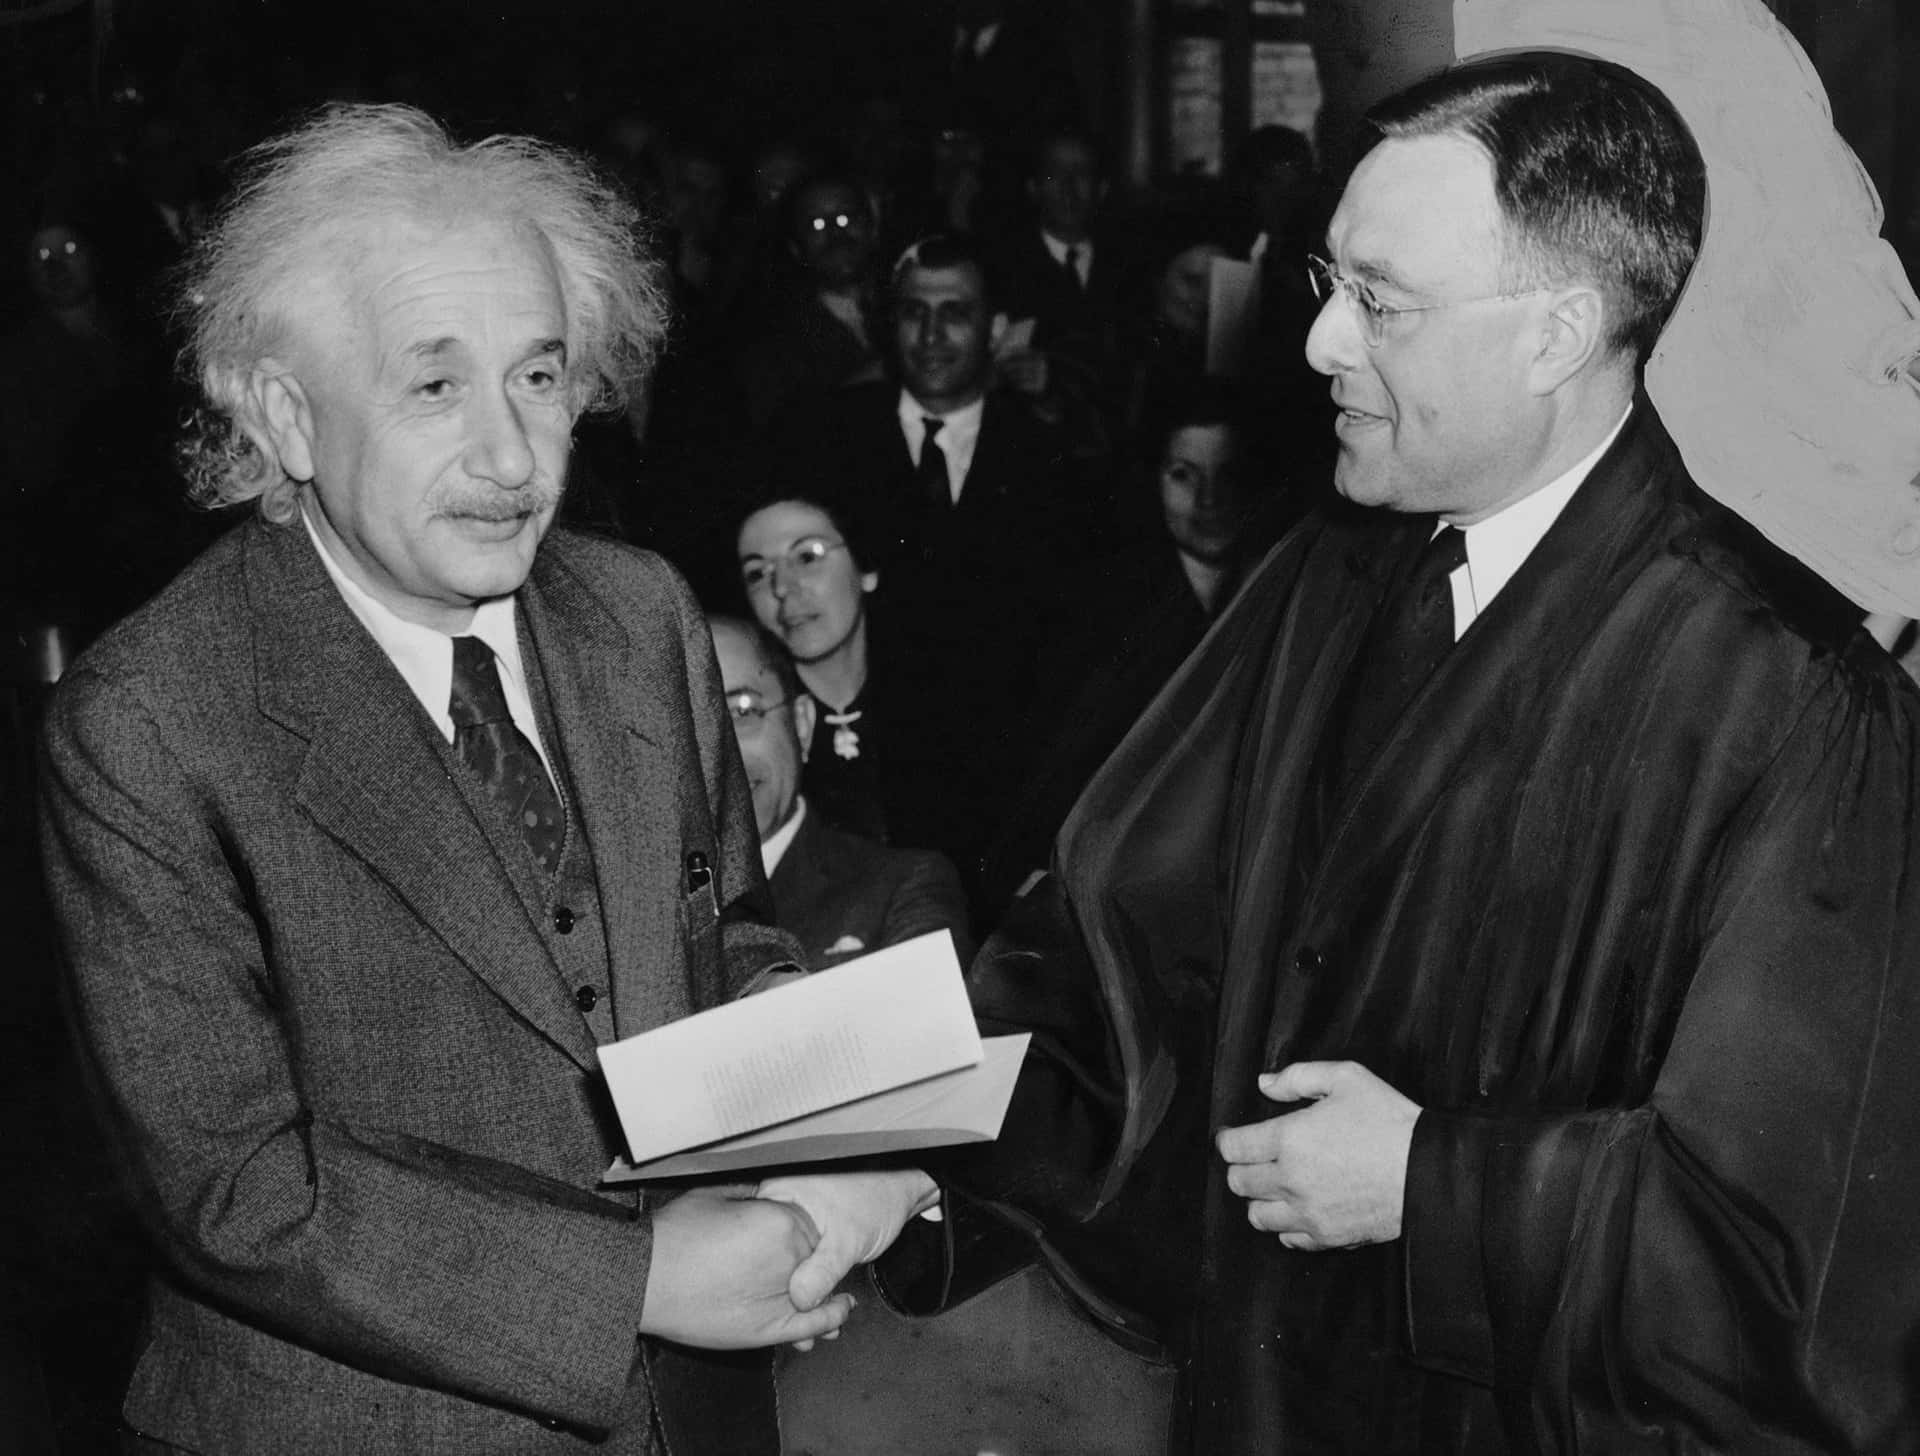 Albert Einstein, scientist and Nobel Prize winner